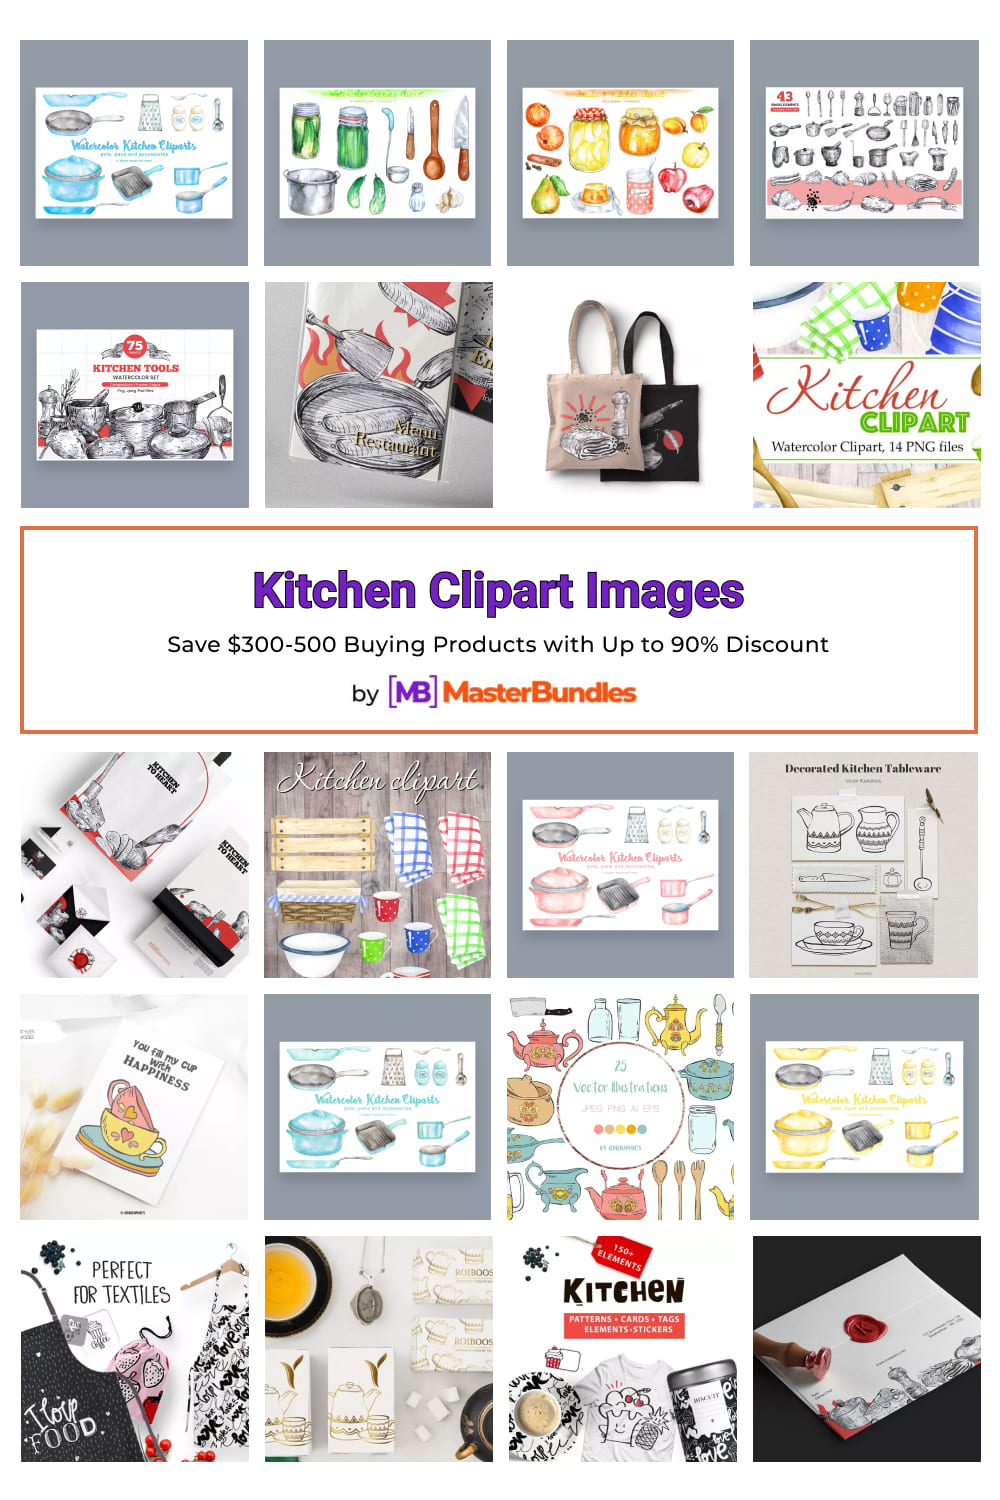 Kitchen Clipart Images Pinterest image.